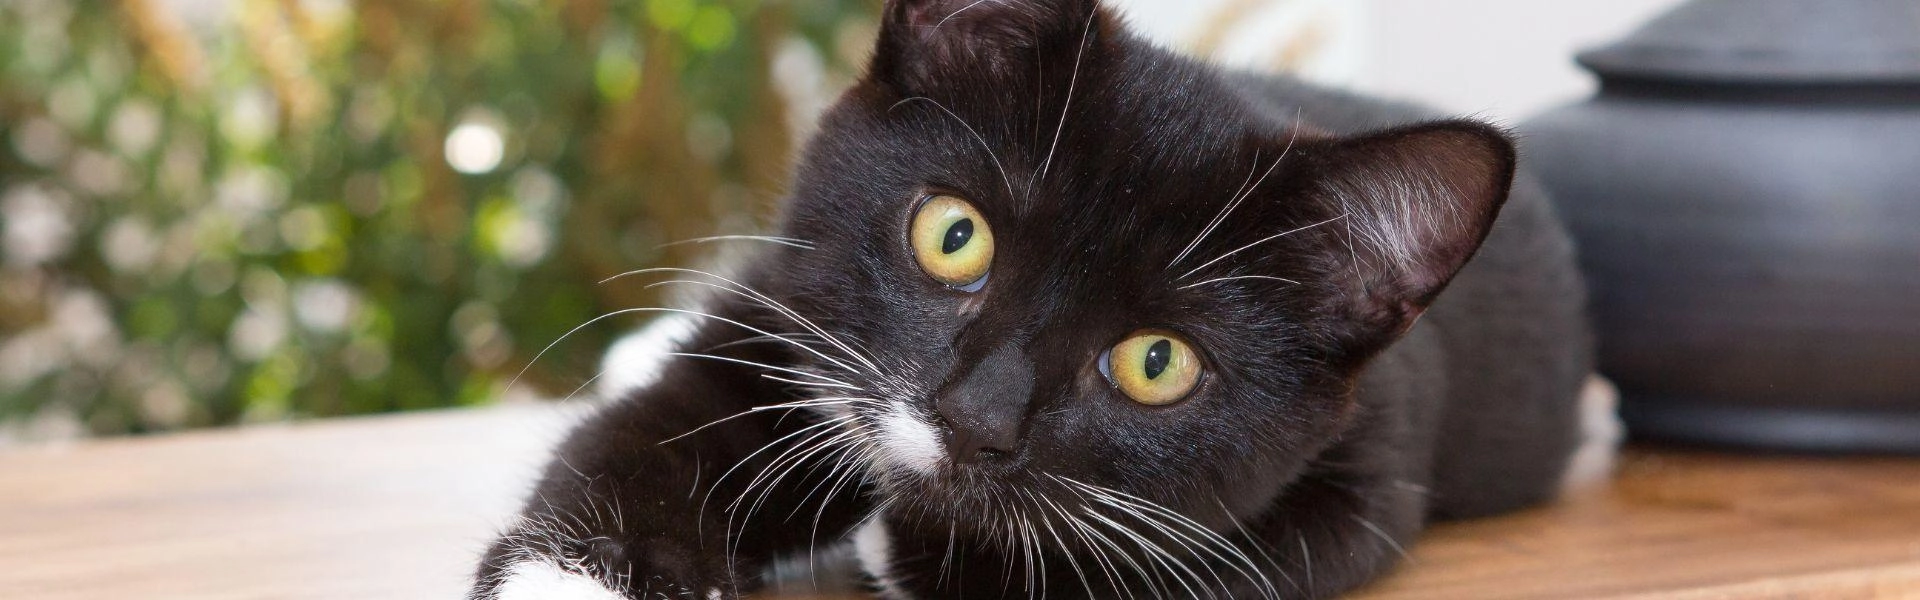 Gato de pelagem preto e branco olhando para a câmera.